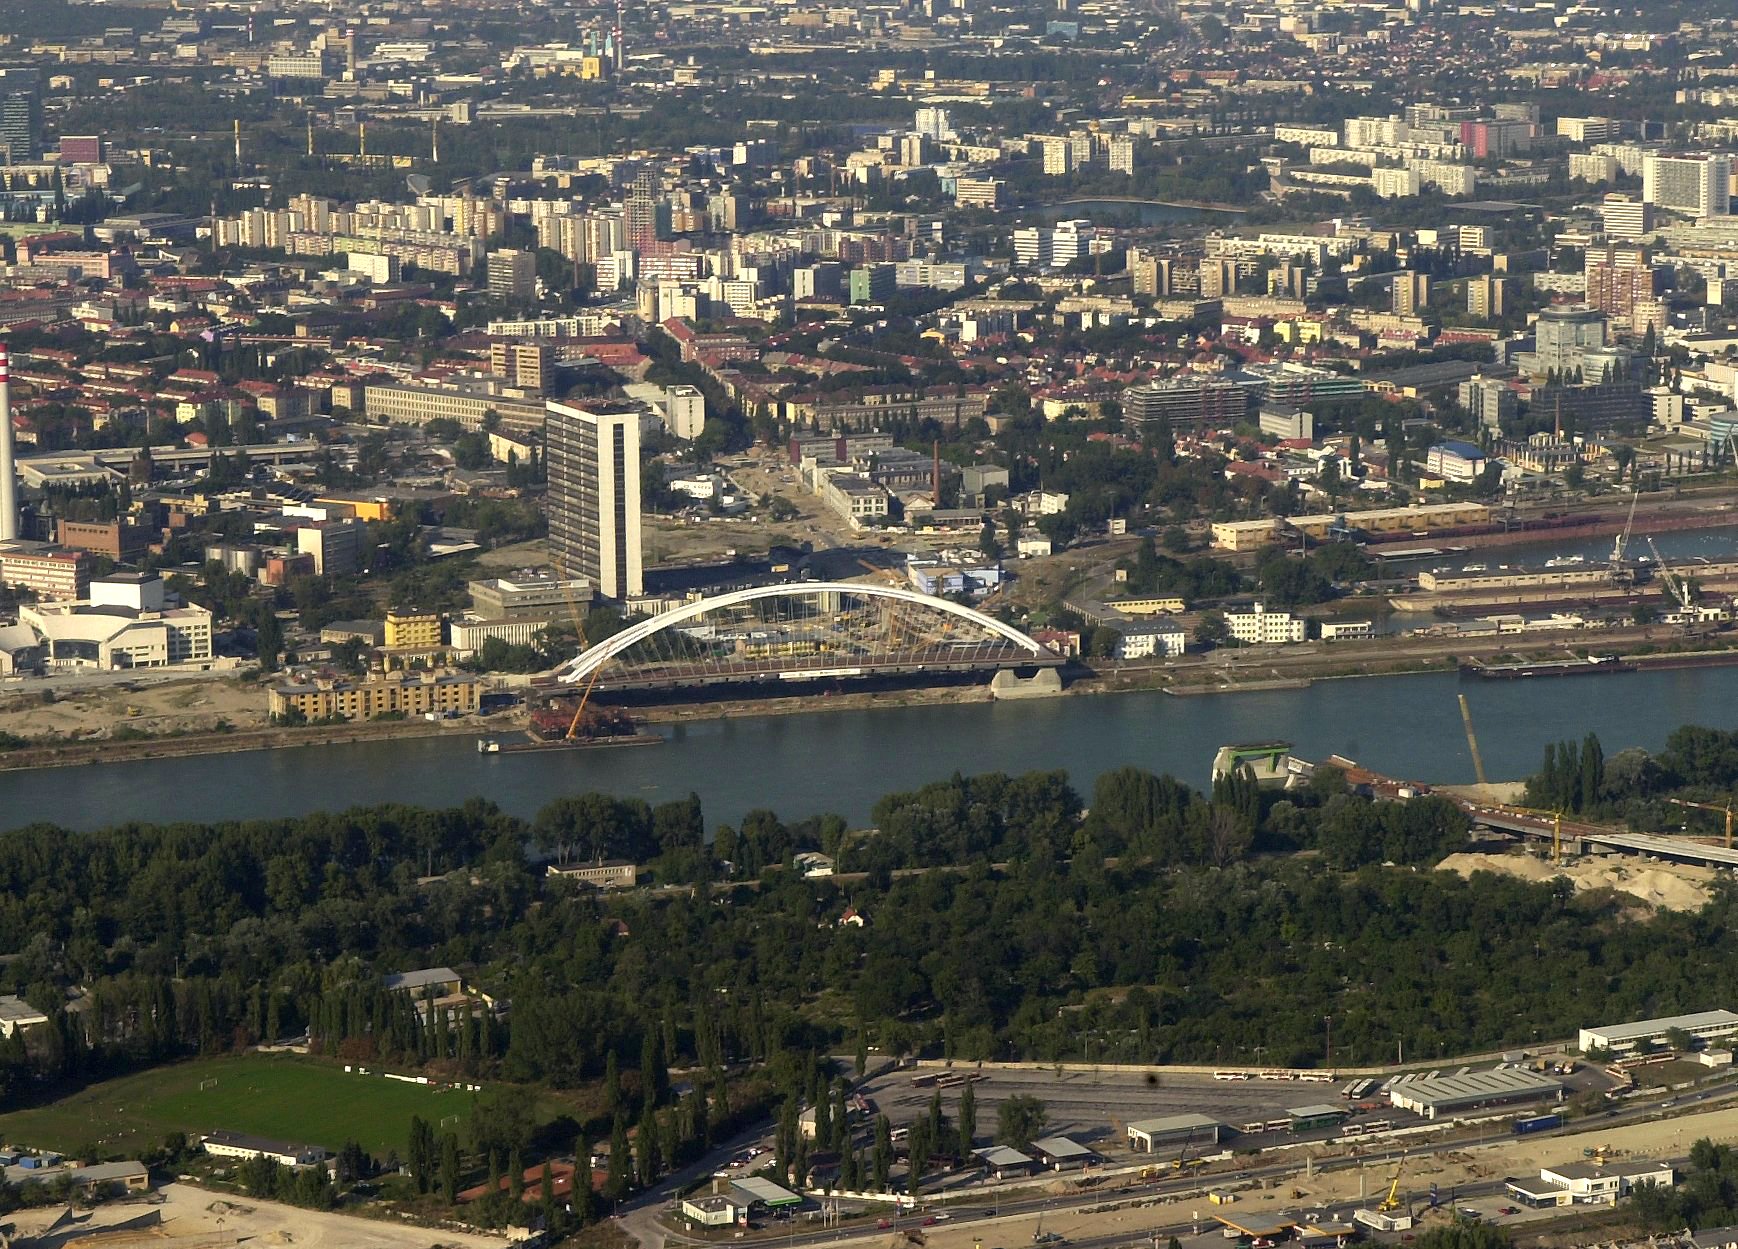 Na pravom brehu Dunaja je stavba Mosta Apollo pred jeho otočením v septembri 2004, po ktorom dosiahol ľavý petržalský breh.